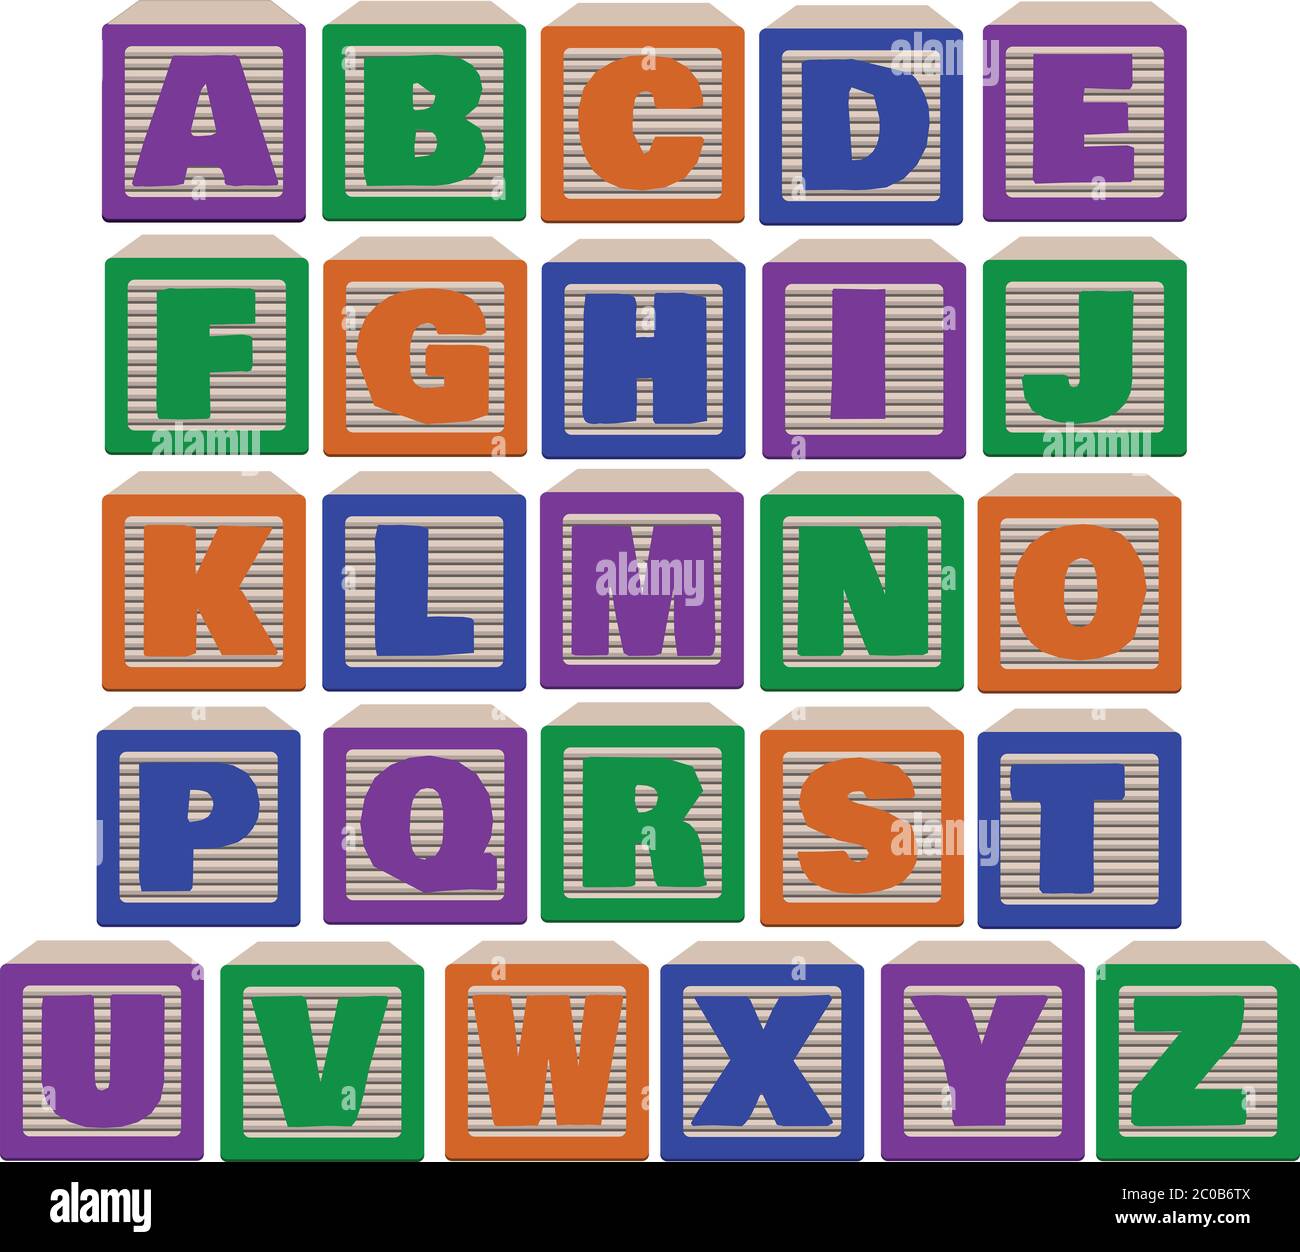 Gleiche Ansicht 26 Buchstaben von Alphabetischen Blöcken in kräftigen Farben, lila, grün orange und blau. Abbildung. Stockfoto